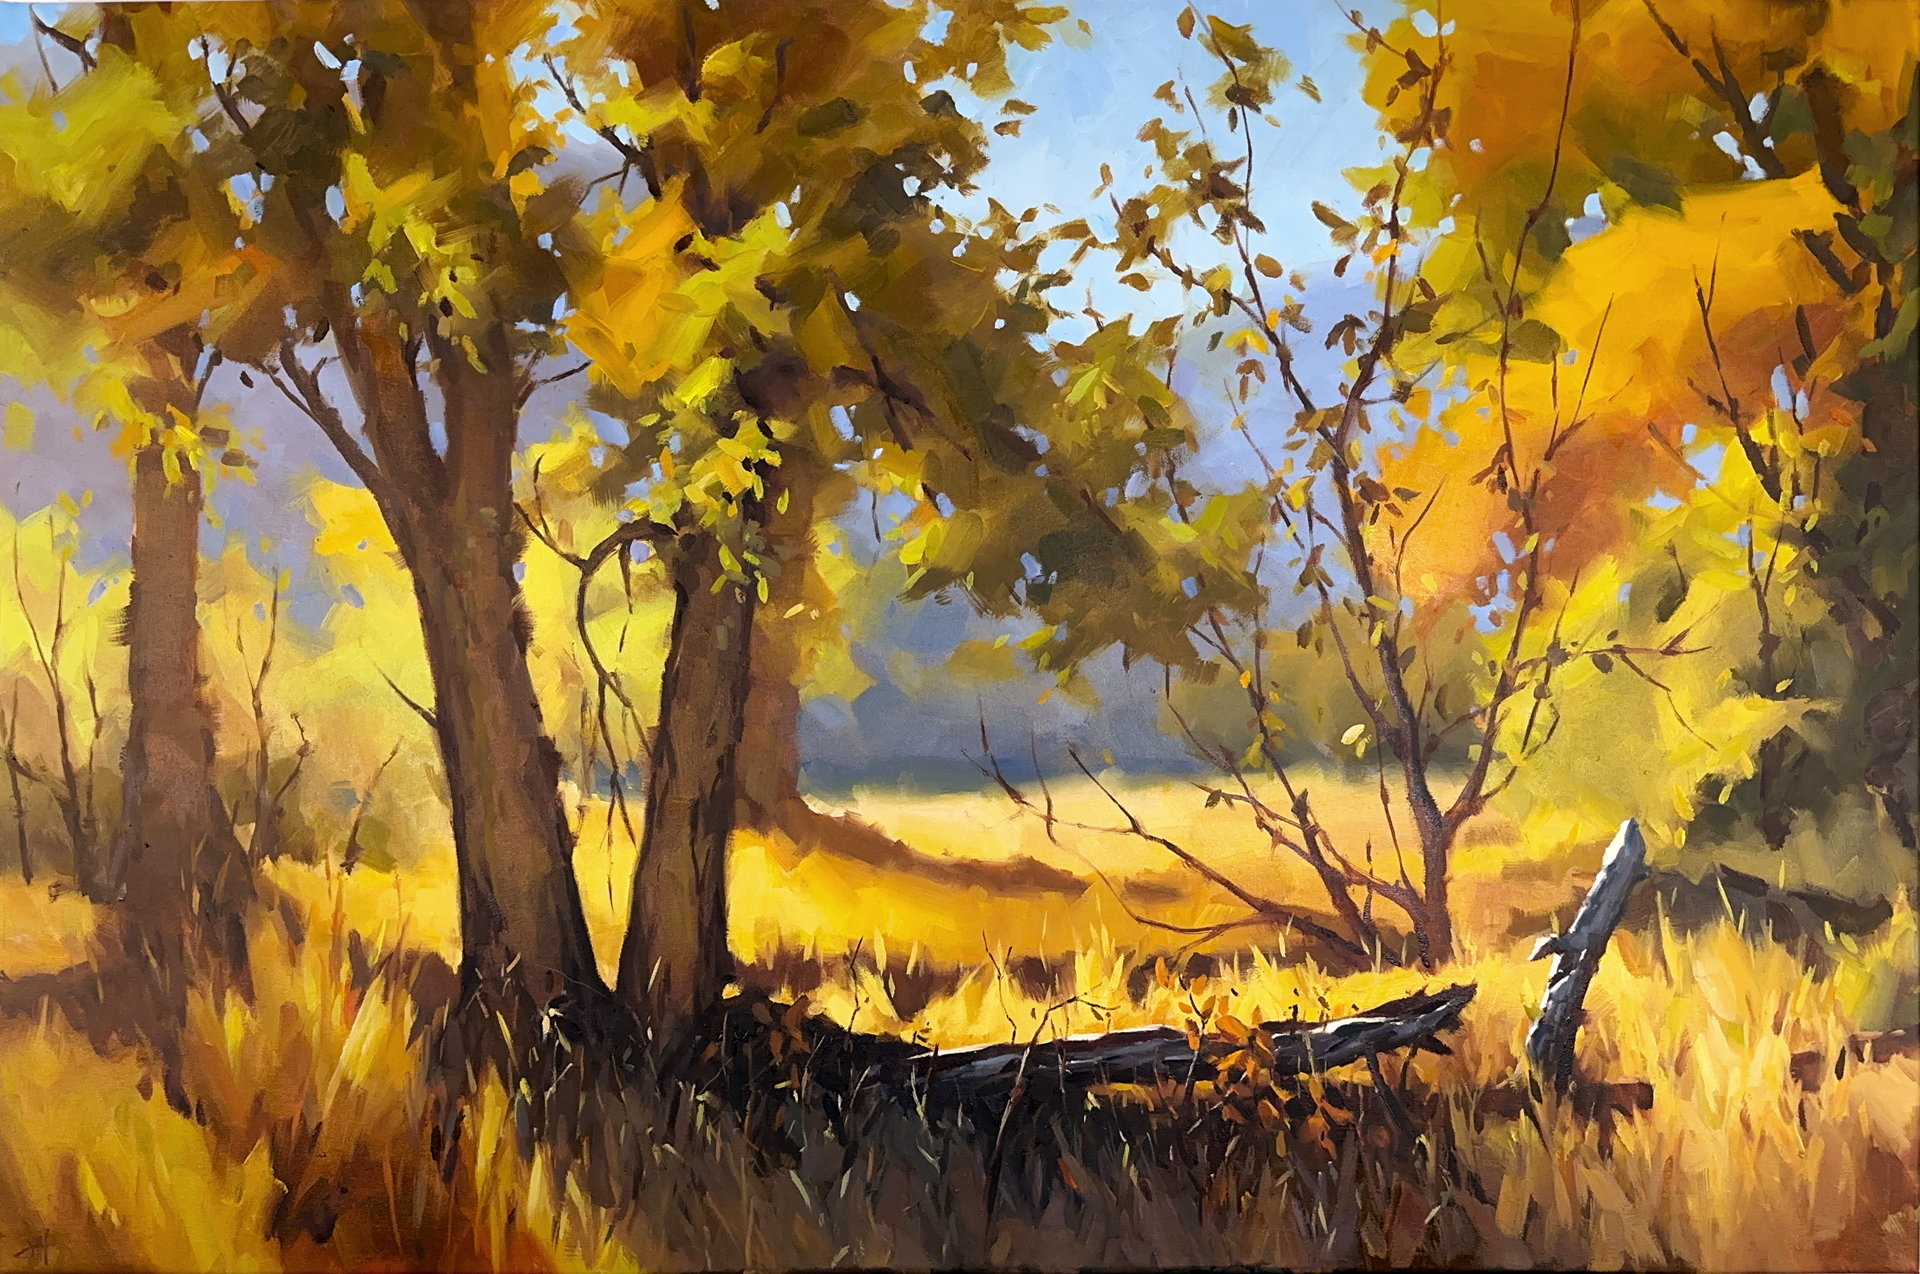 Autumn Grove by Judd Mercer